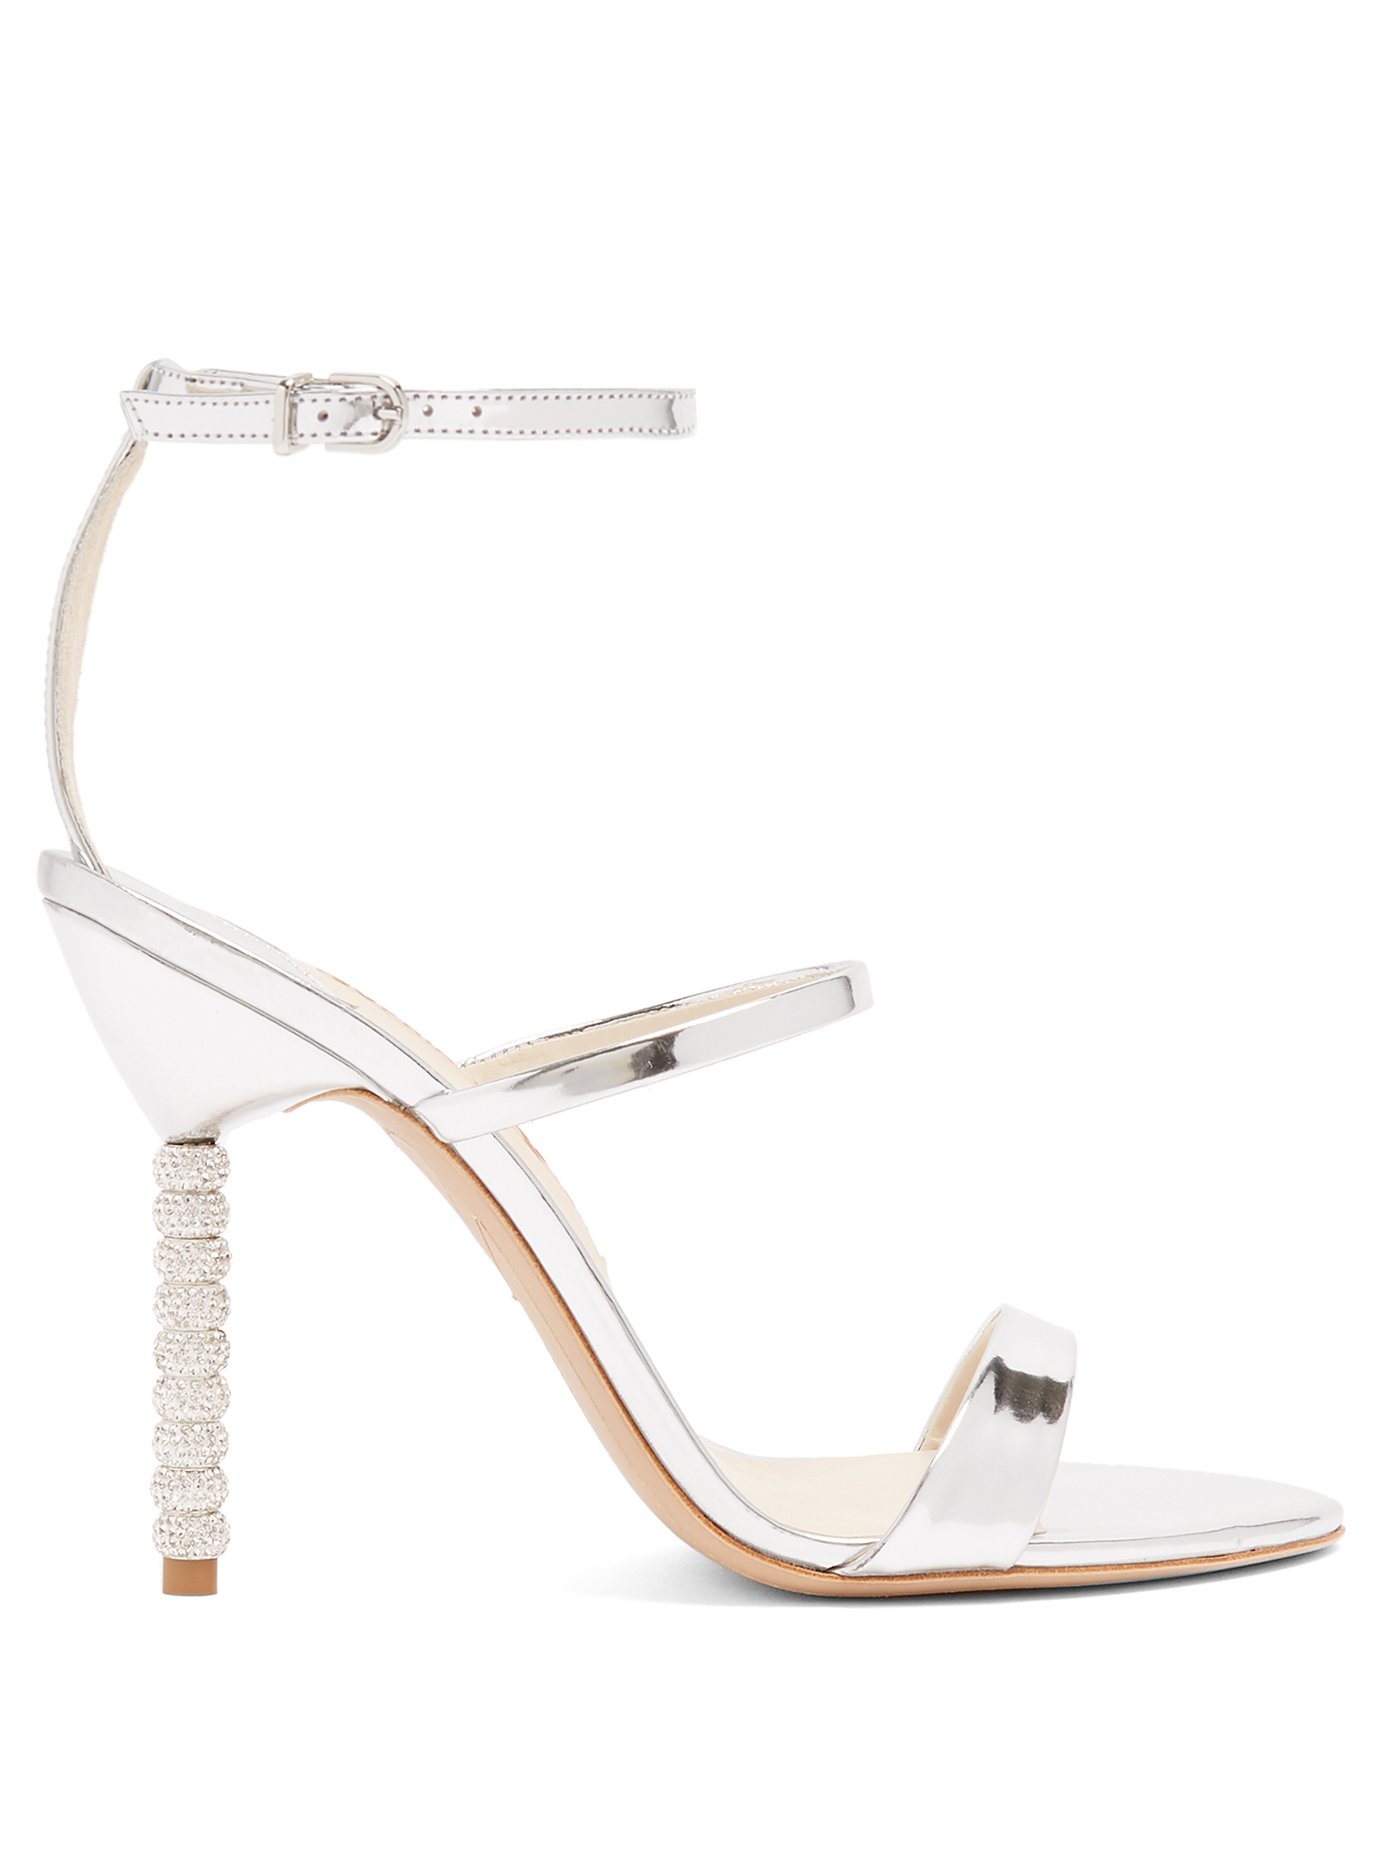 sophia webster embellished heel